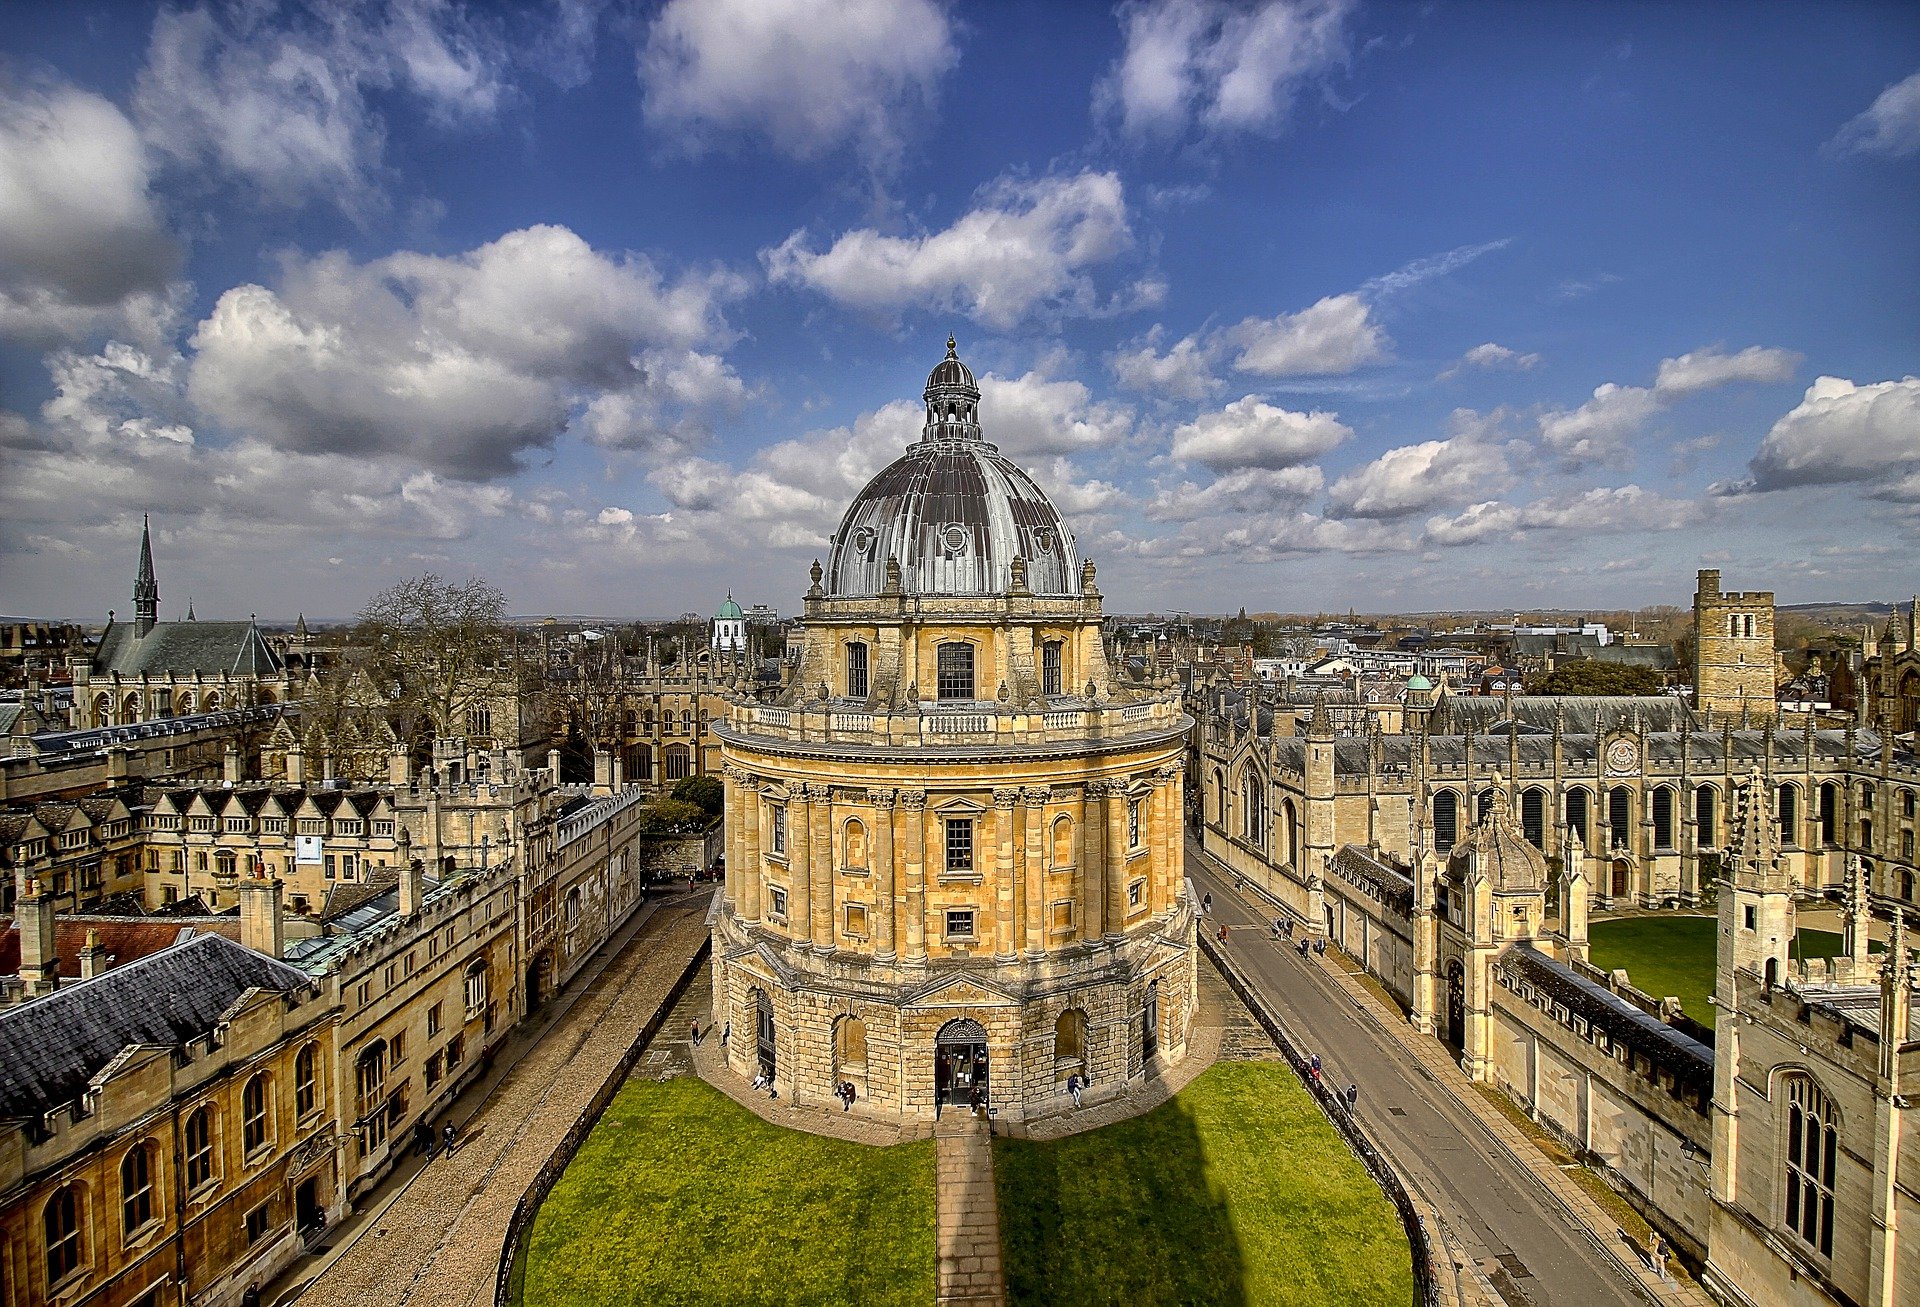 Oxfordská univerzita